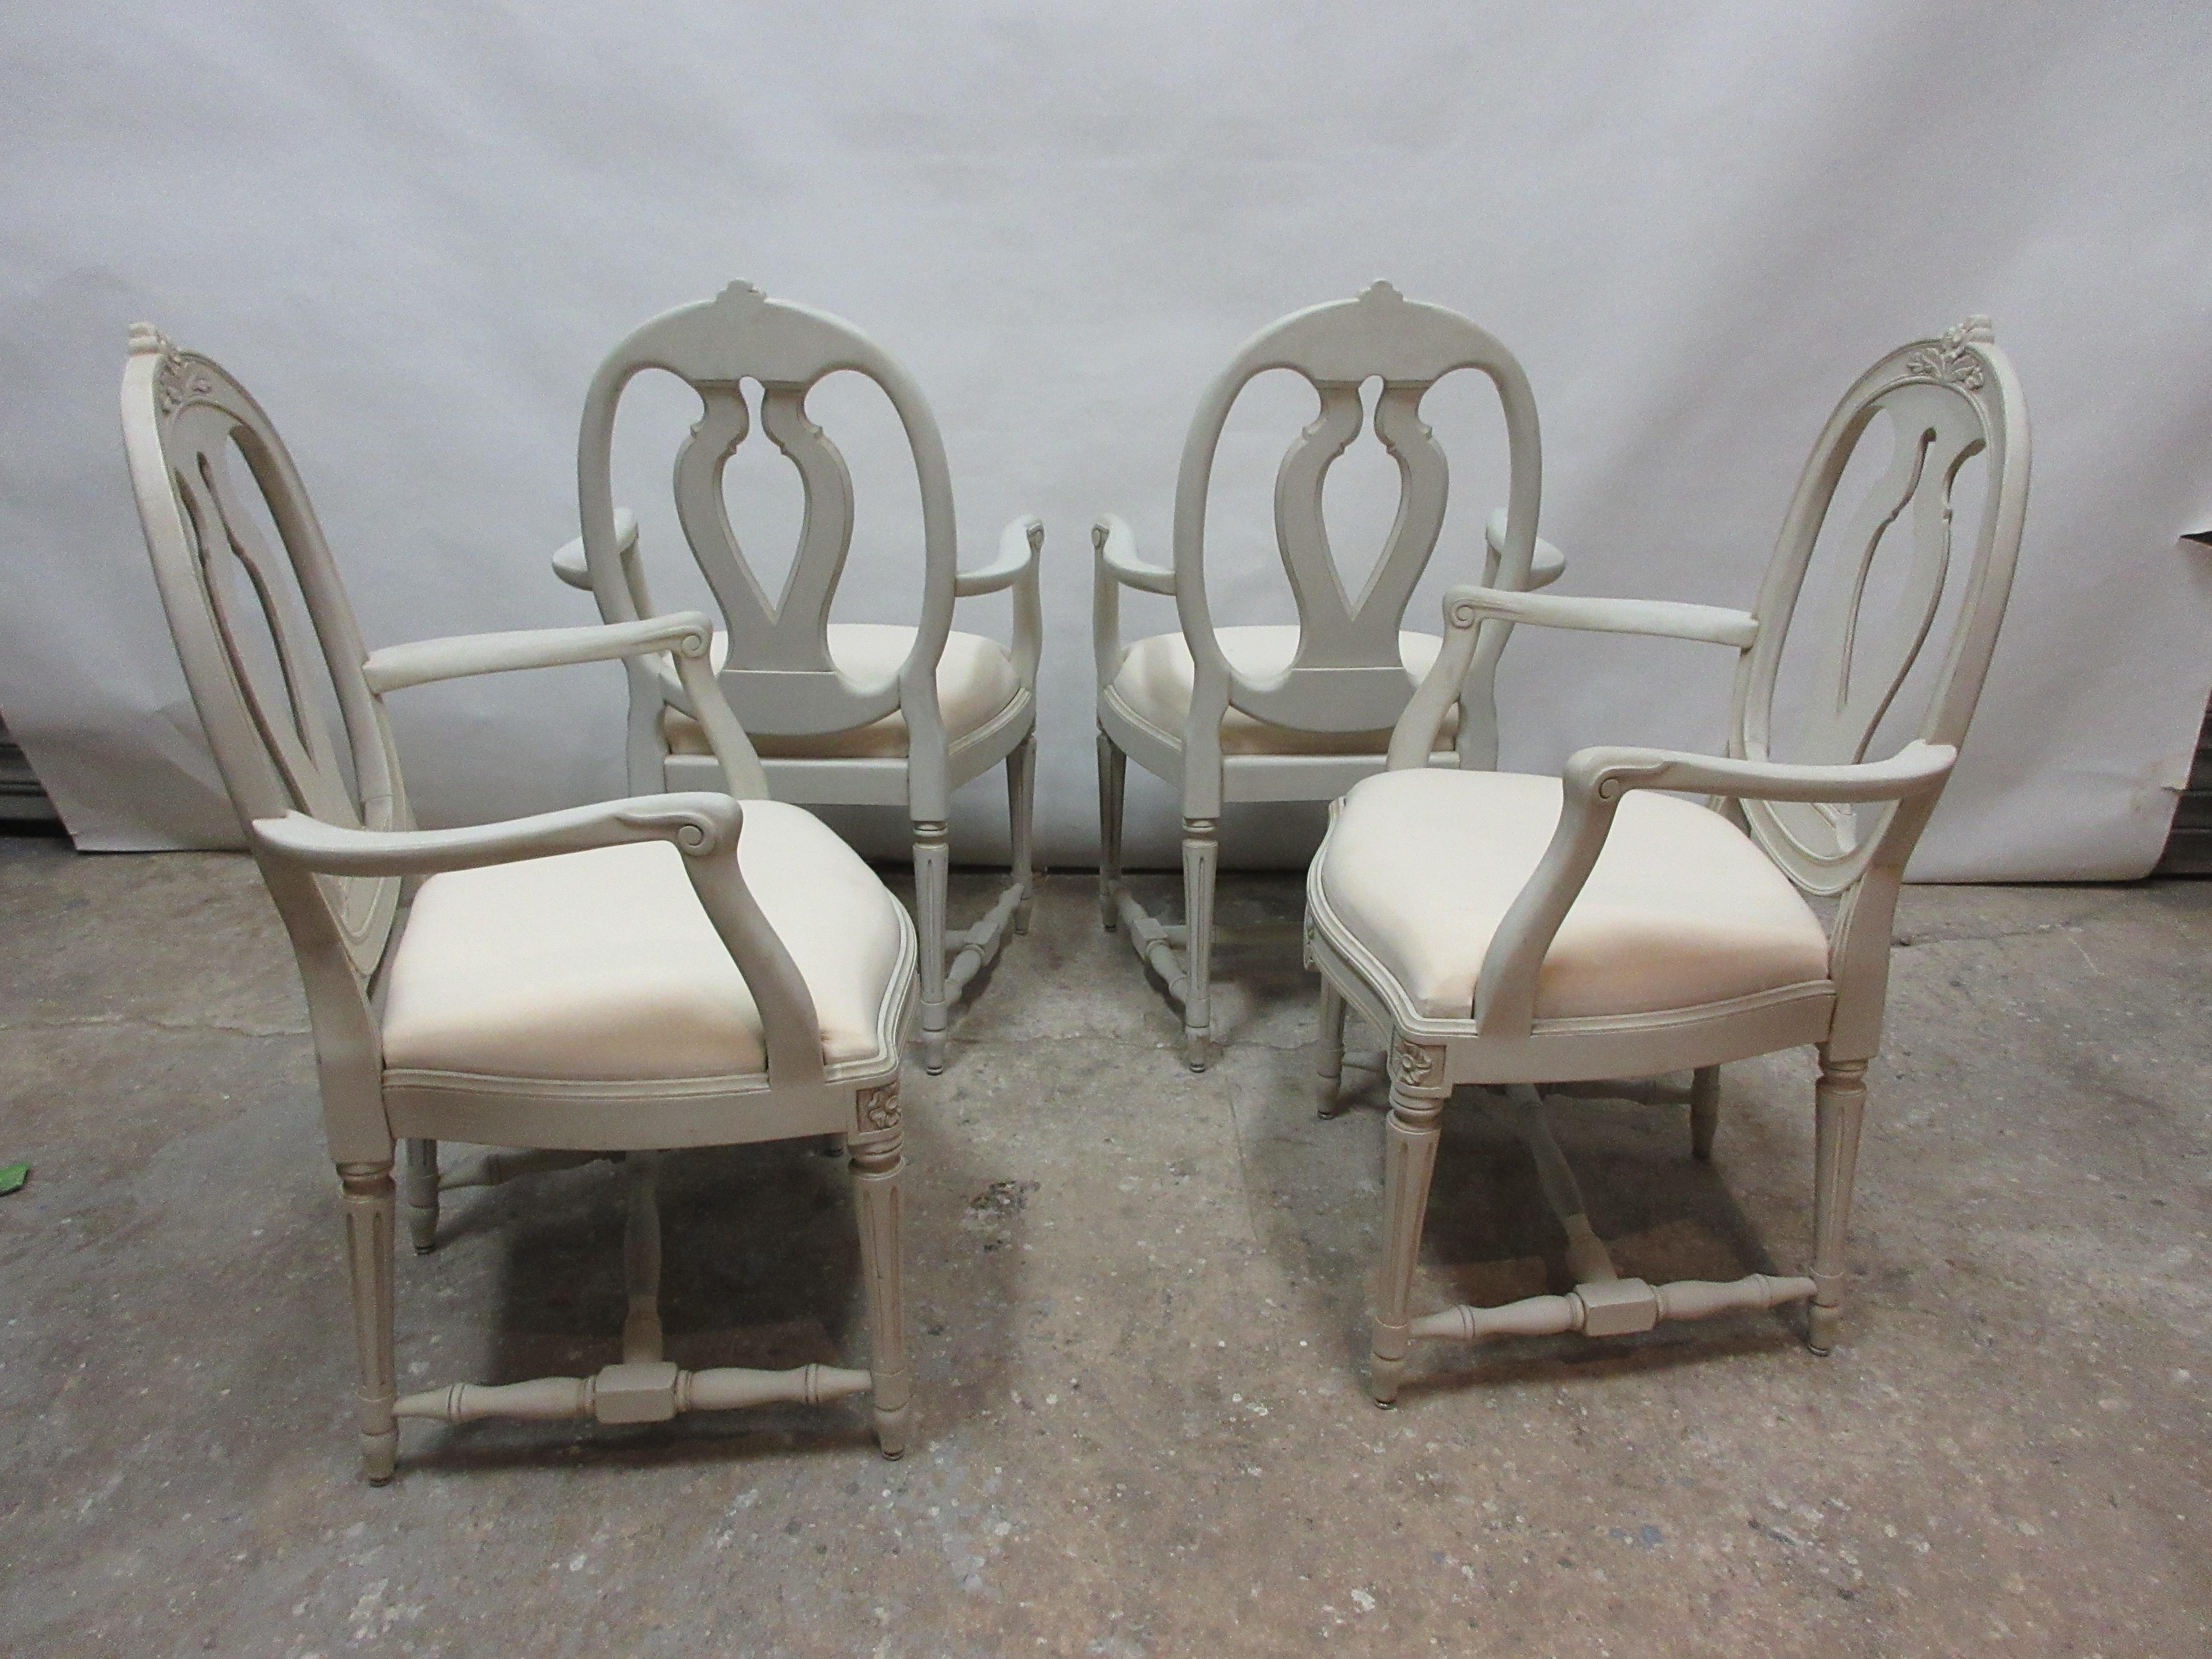 Il s'agit d'un ensemble de 4 fauteuils suédois de style gustavien. Ils ont été restaurés et repeints avec des peintures au lait 